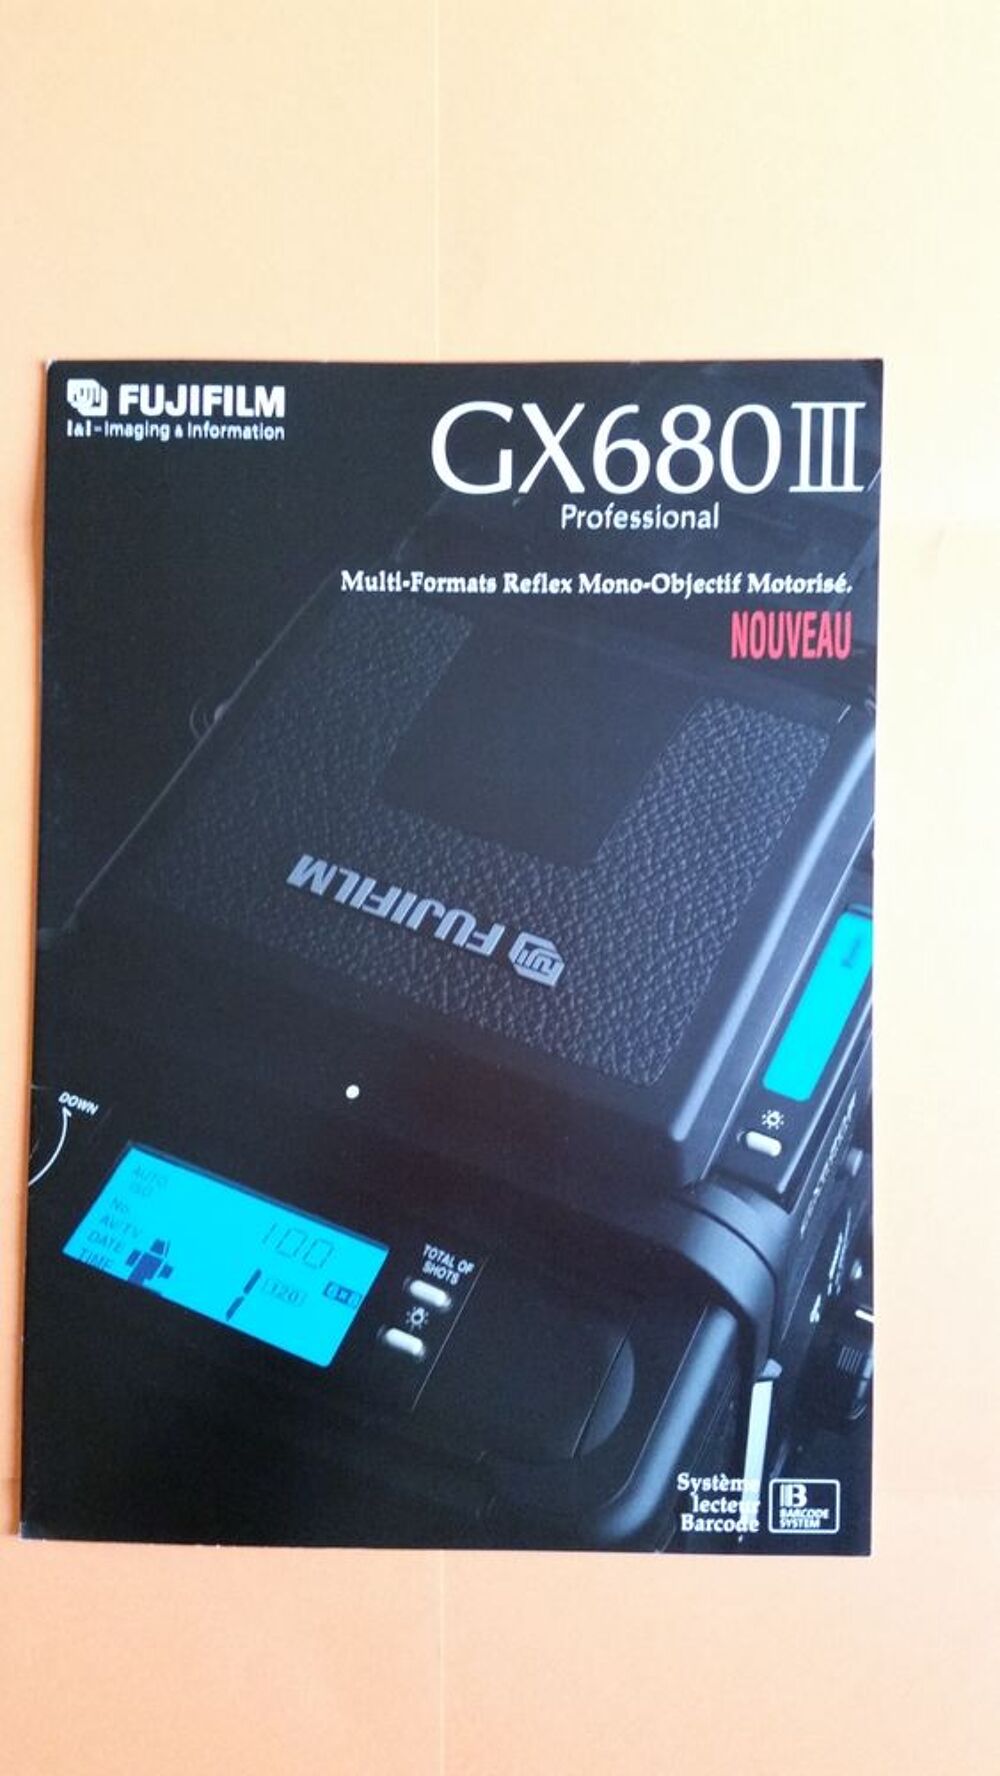 FUJI GX 680 III Photos/Video/TV